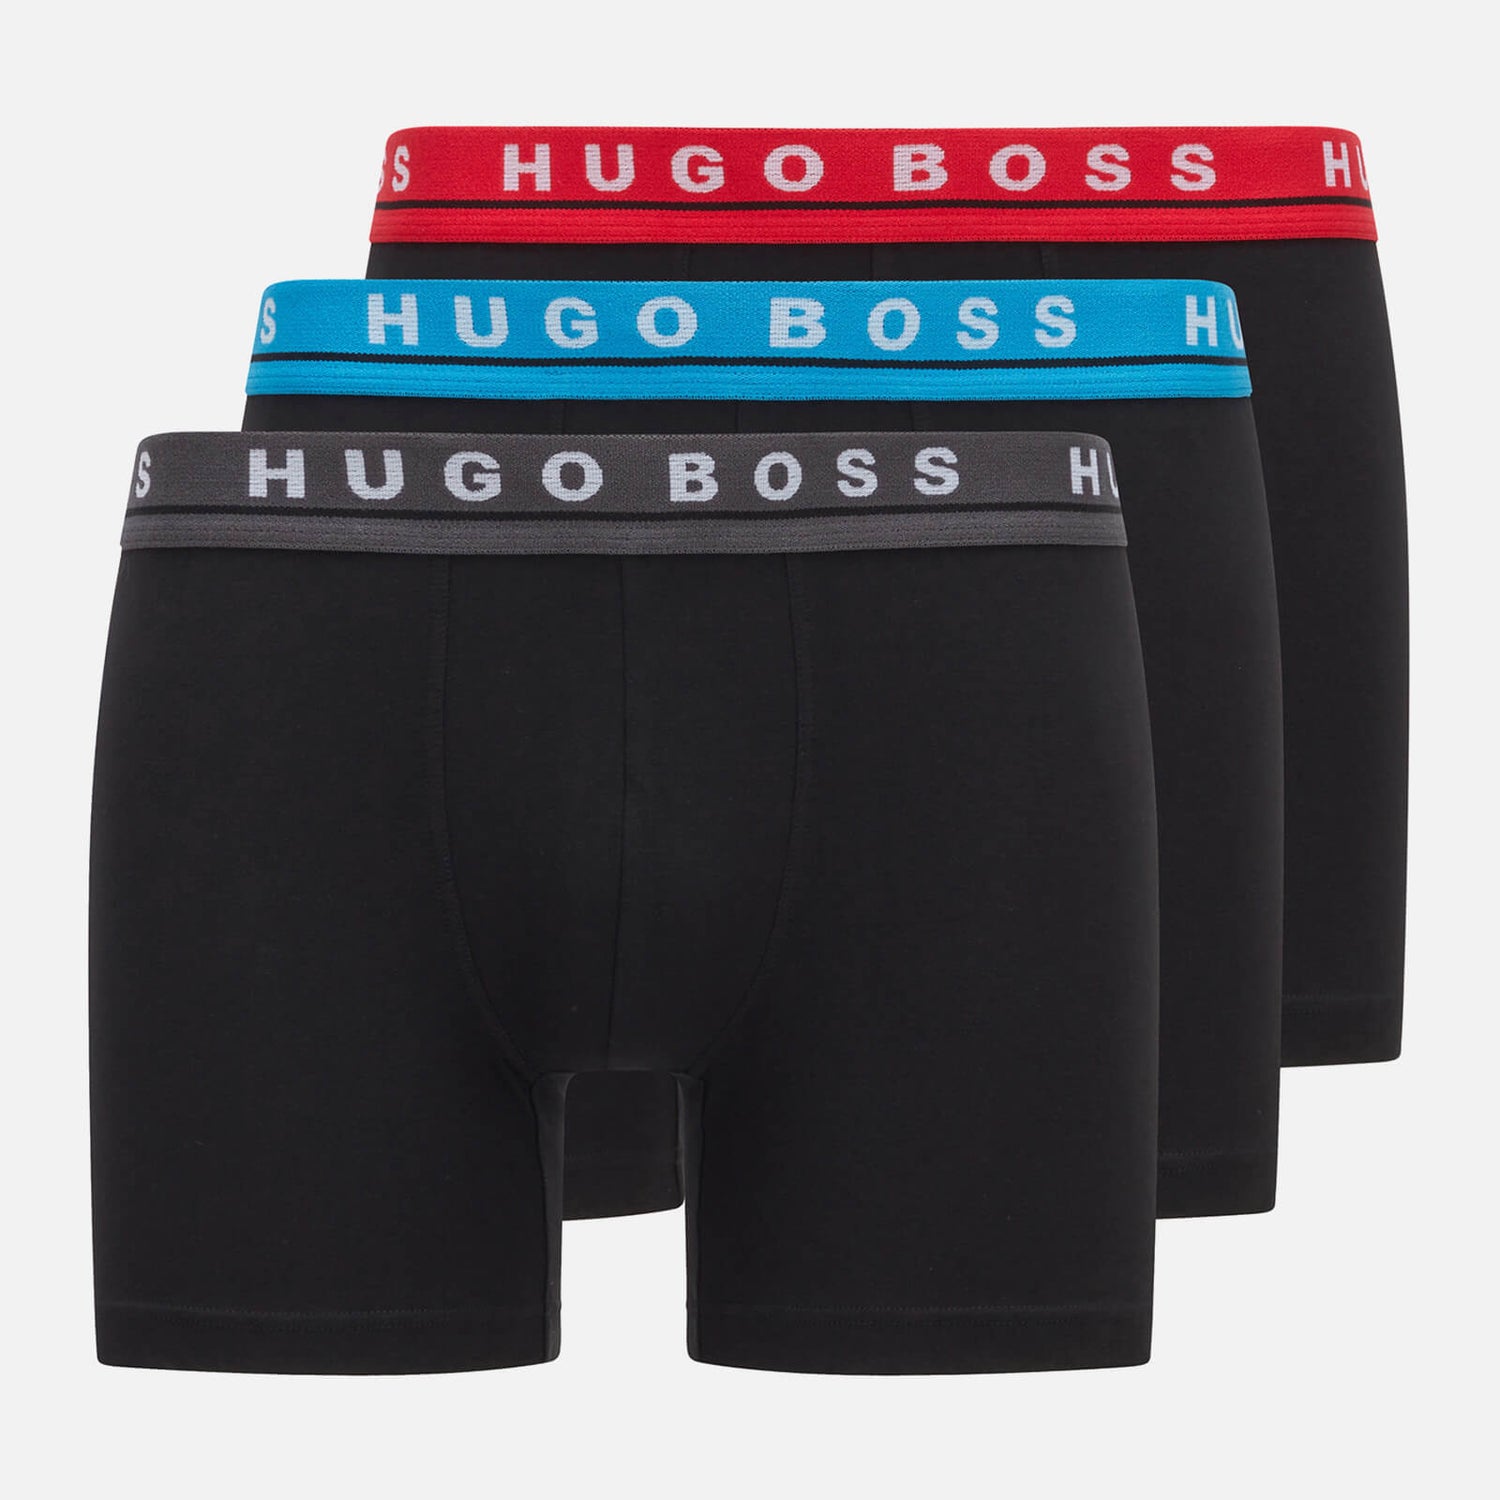 BOSS Bodywear Men's 3-Pack Boxer Briefs - Black/Multi